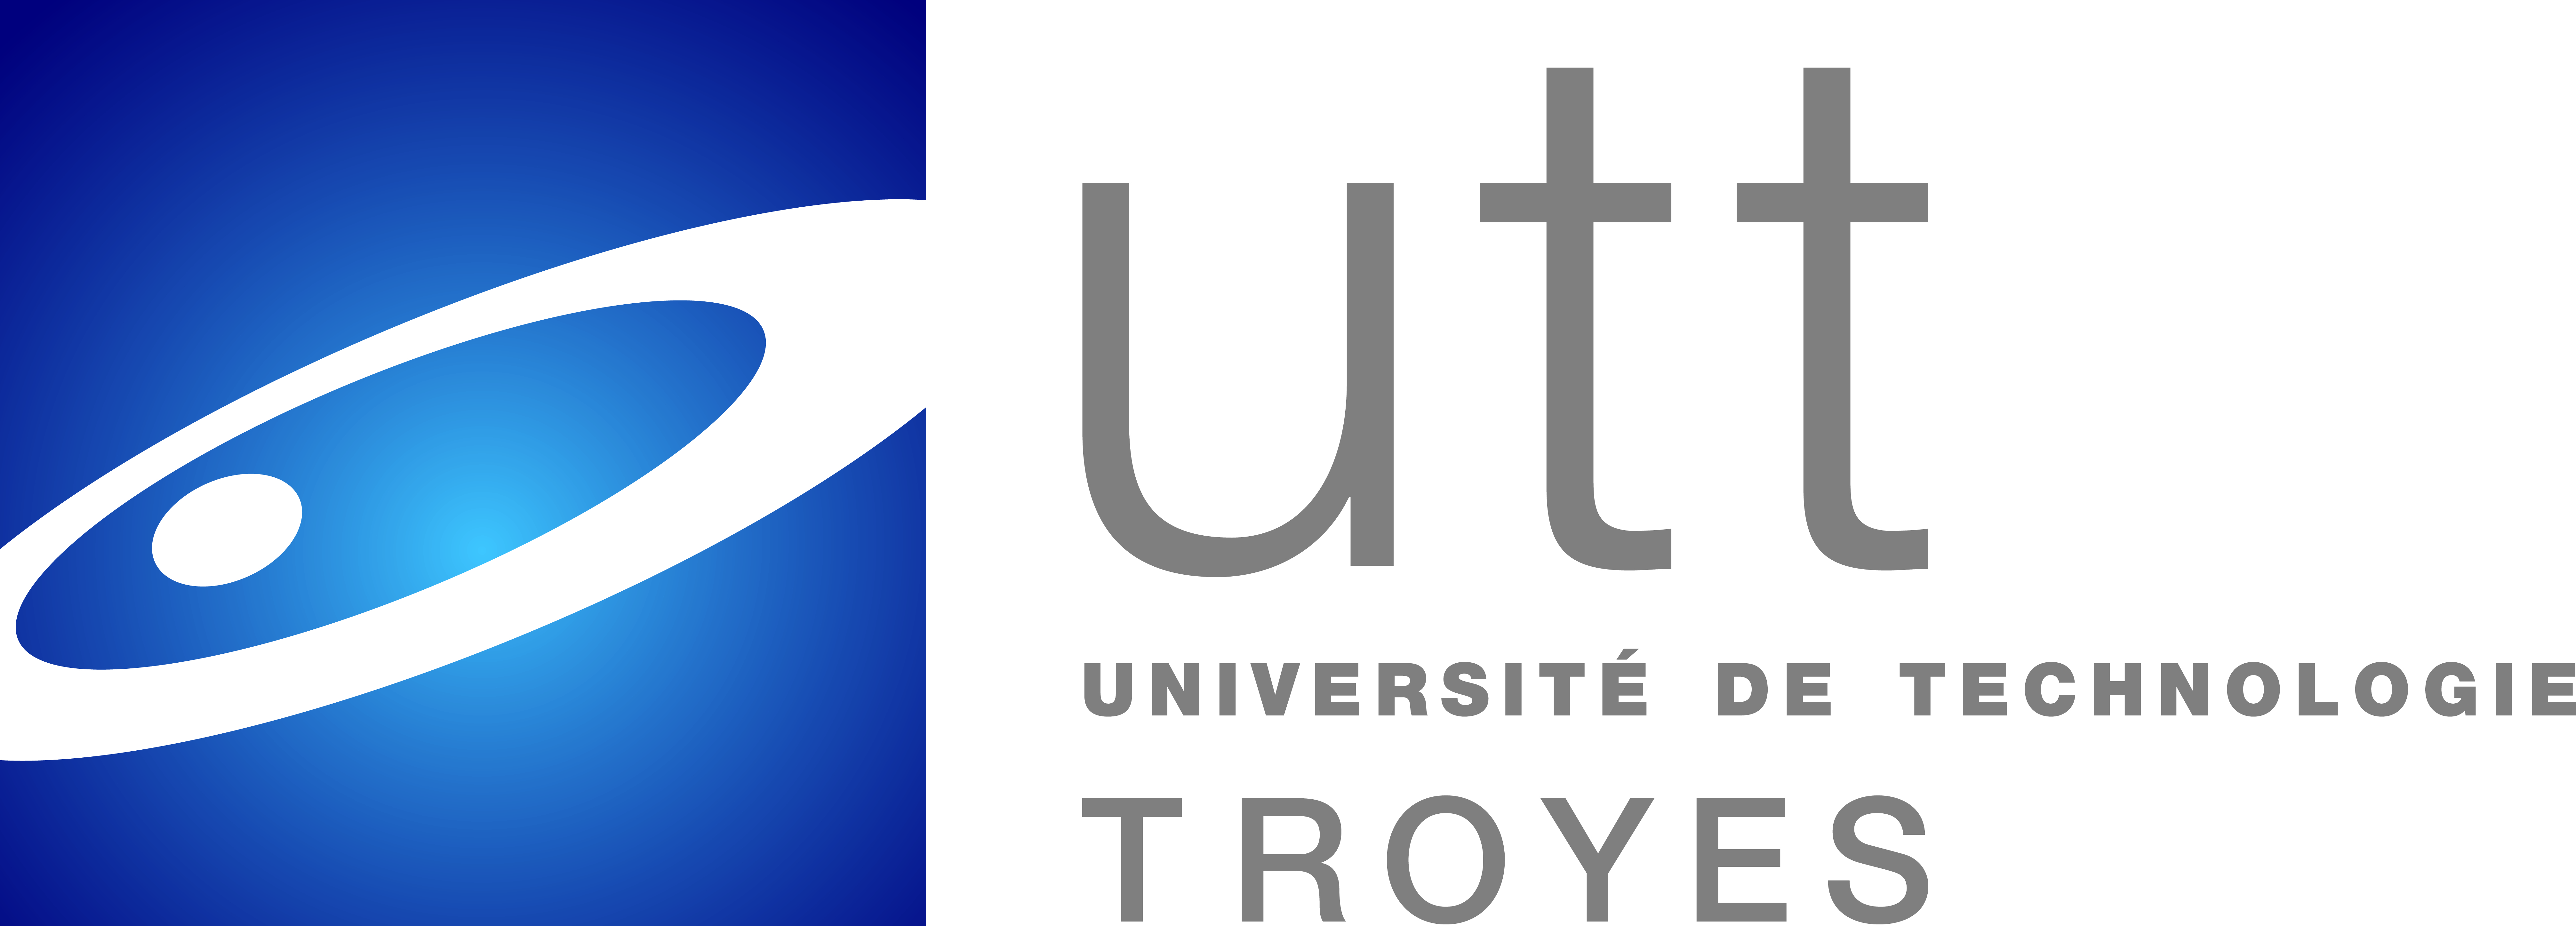 University of Technology of Troyes logo